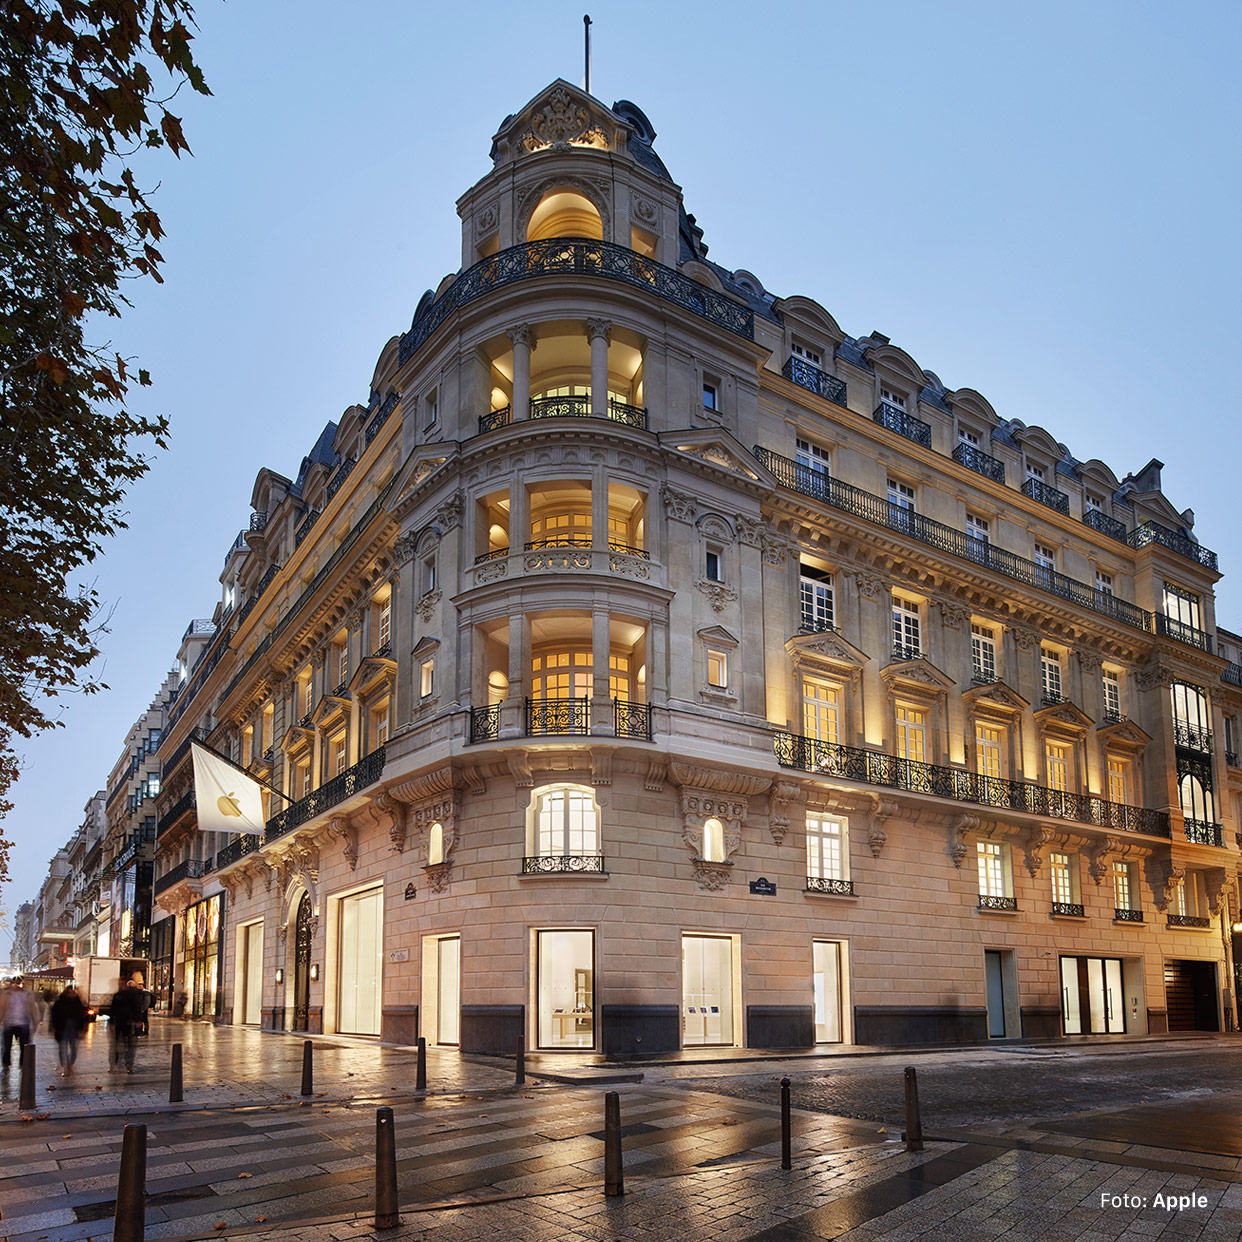 Apple Newsroom: "Apple Champs-Élysées eröffnet diesen Sonntag auf der berühmten Pariser Allee"